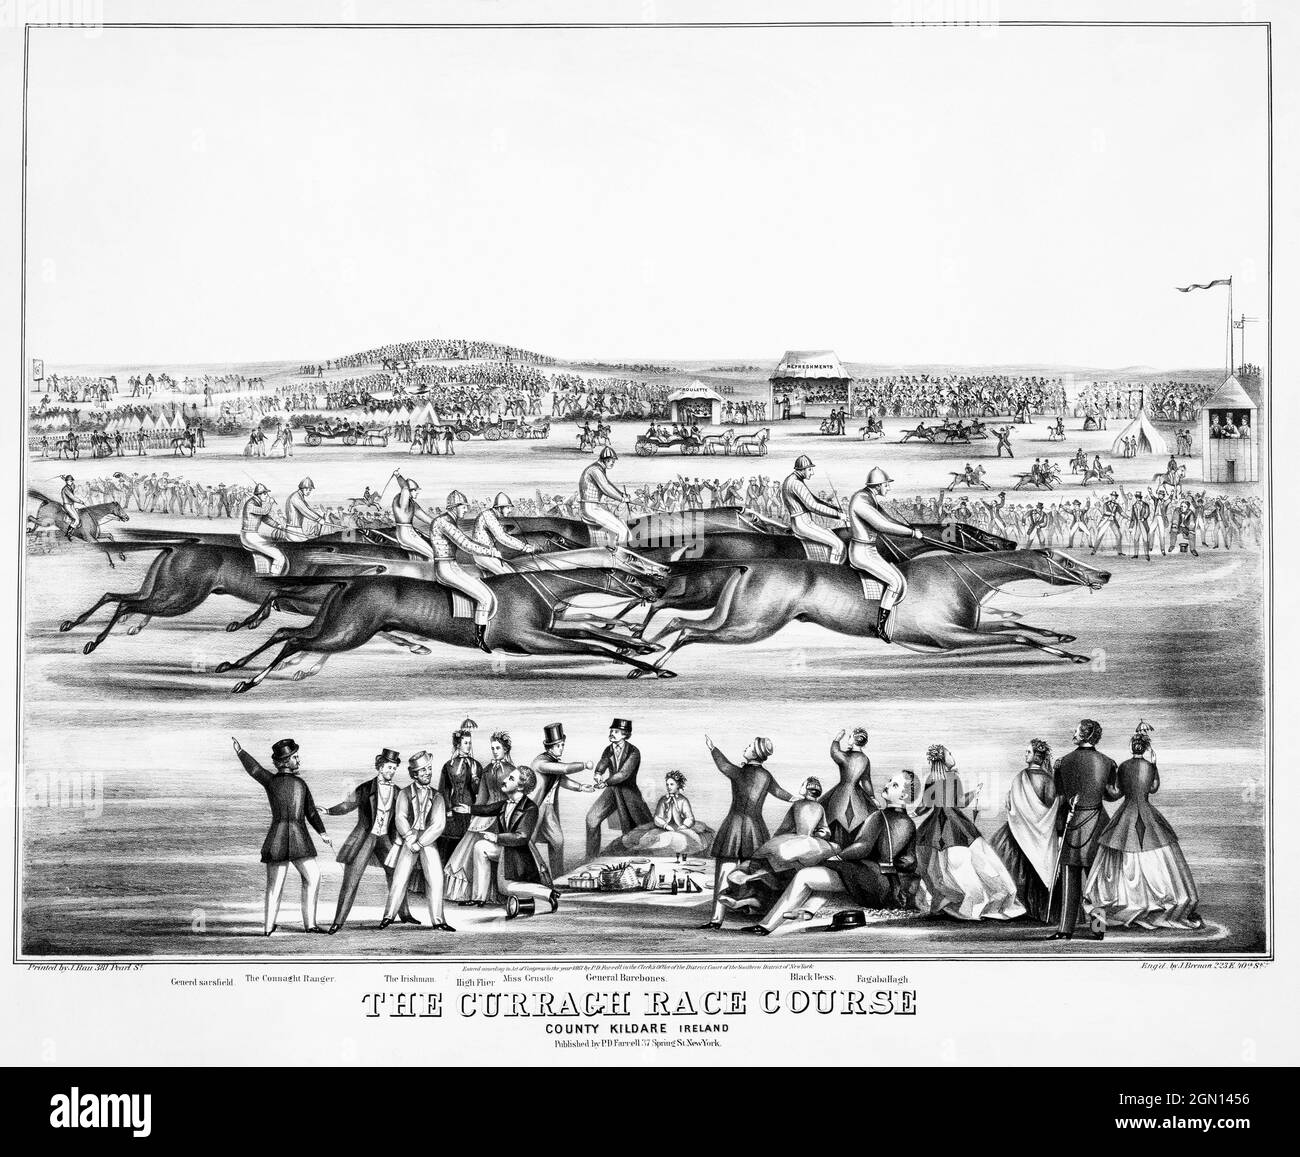 Eine Skizze der Rennen auf der Curragh Race Course in der Grafschaft Kildare, Irland. Erstellt um 1867 von John Brenan Stockfoto